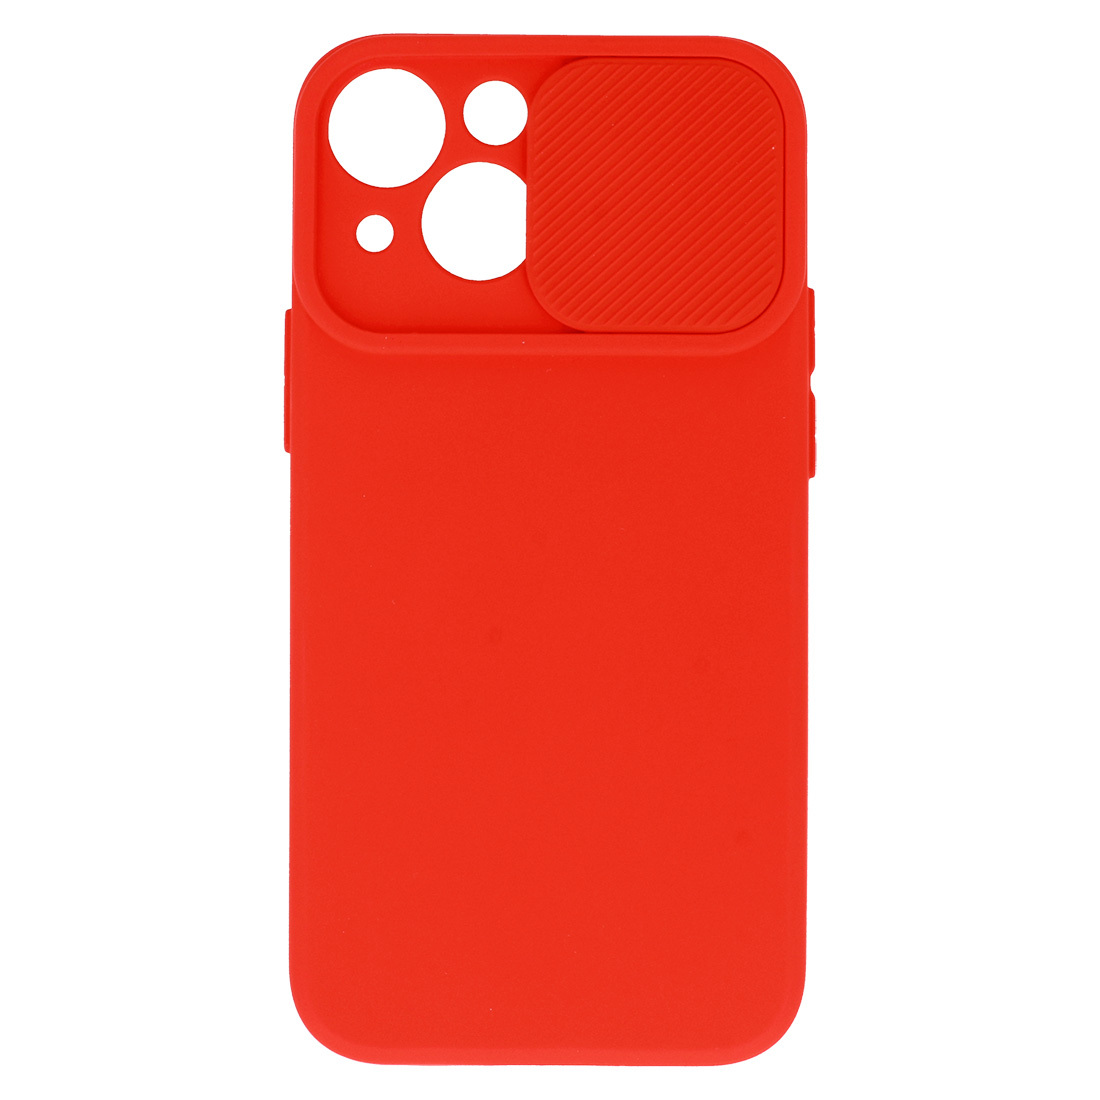 Pokrowiec etui z elastycznego TPU Camshield Soft Case czerwone APPLE iPhone 8 / 4